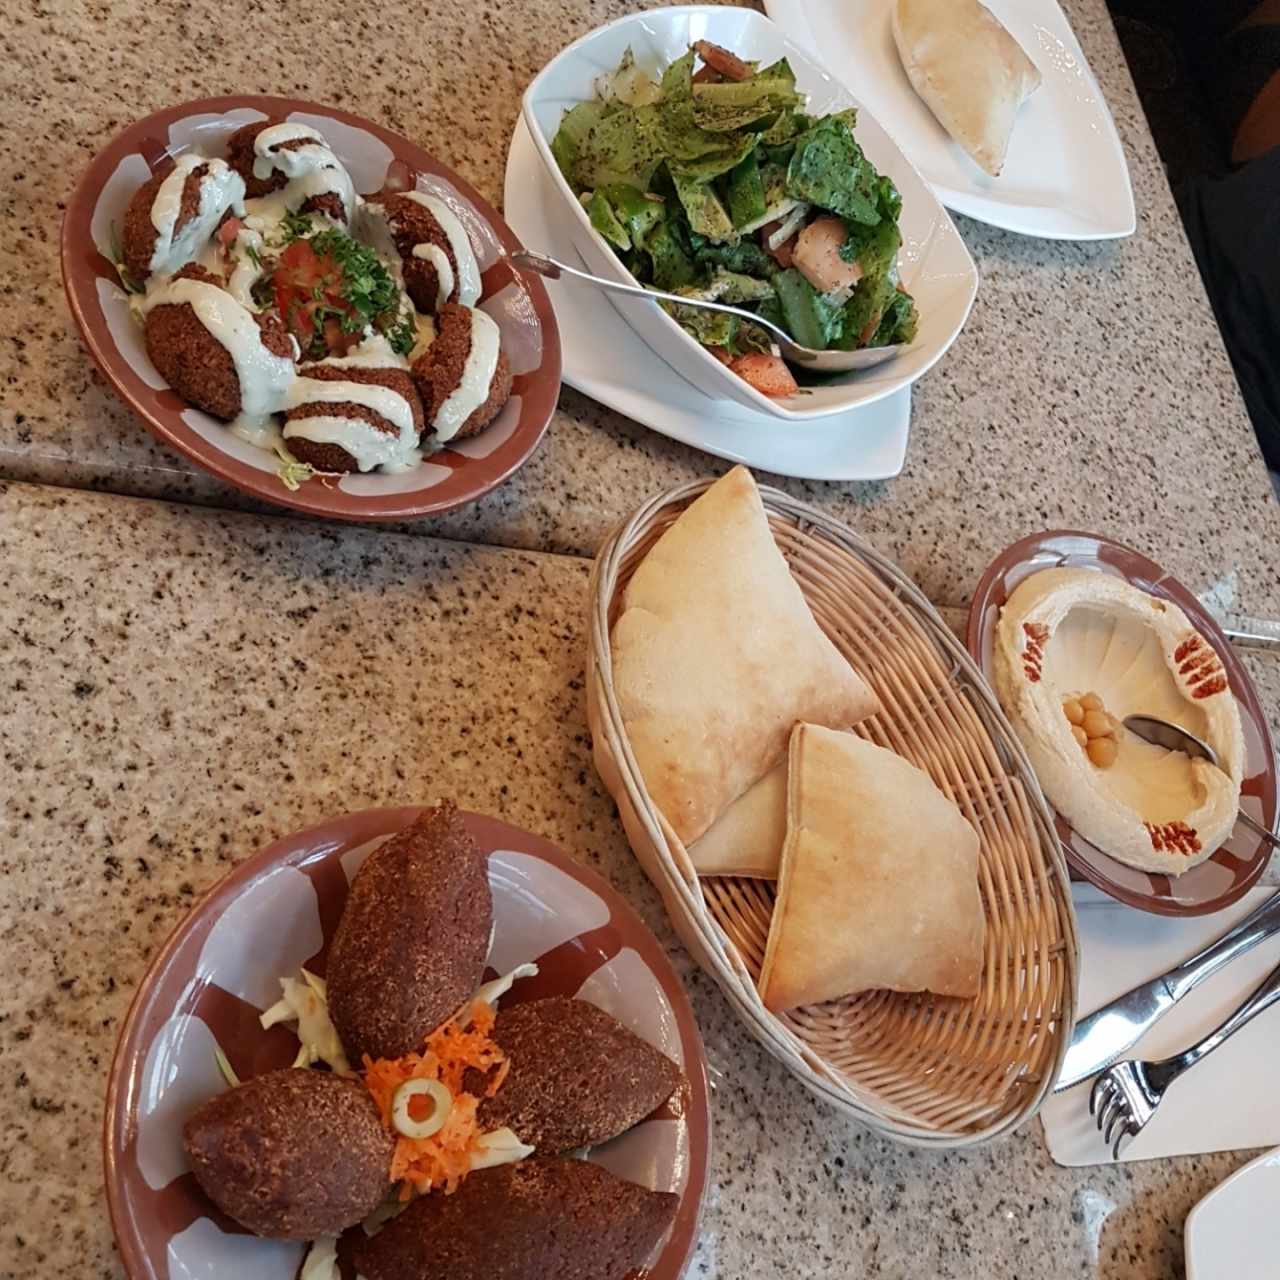 Ensalada Fattoush, Kibbeh, Falafel, orden de Pita y Hummus